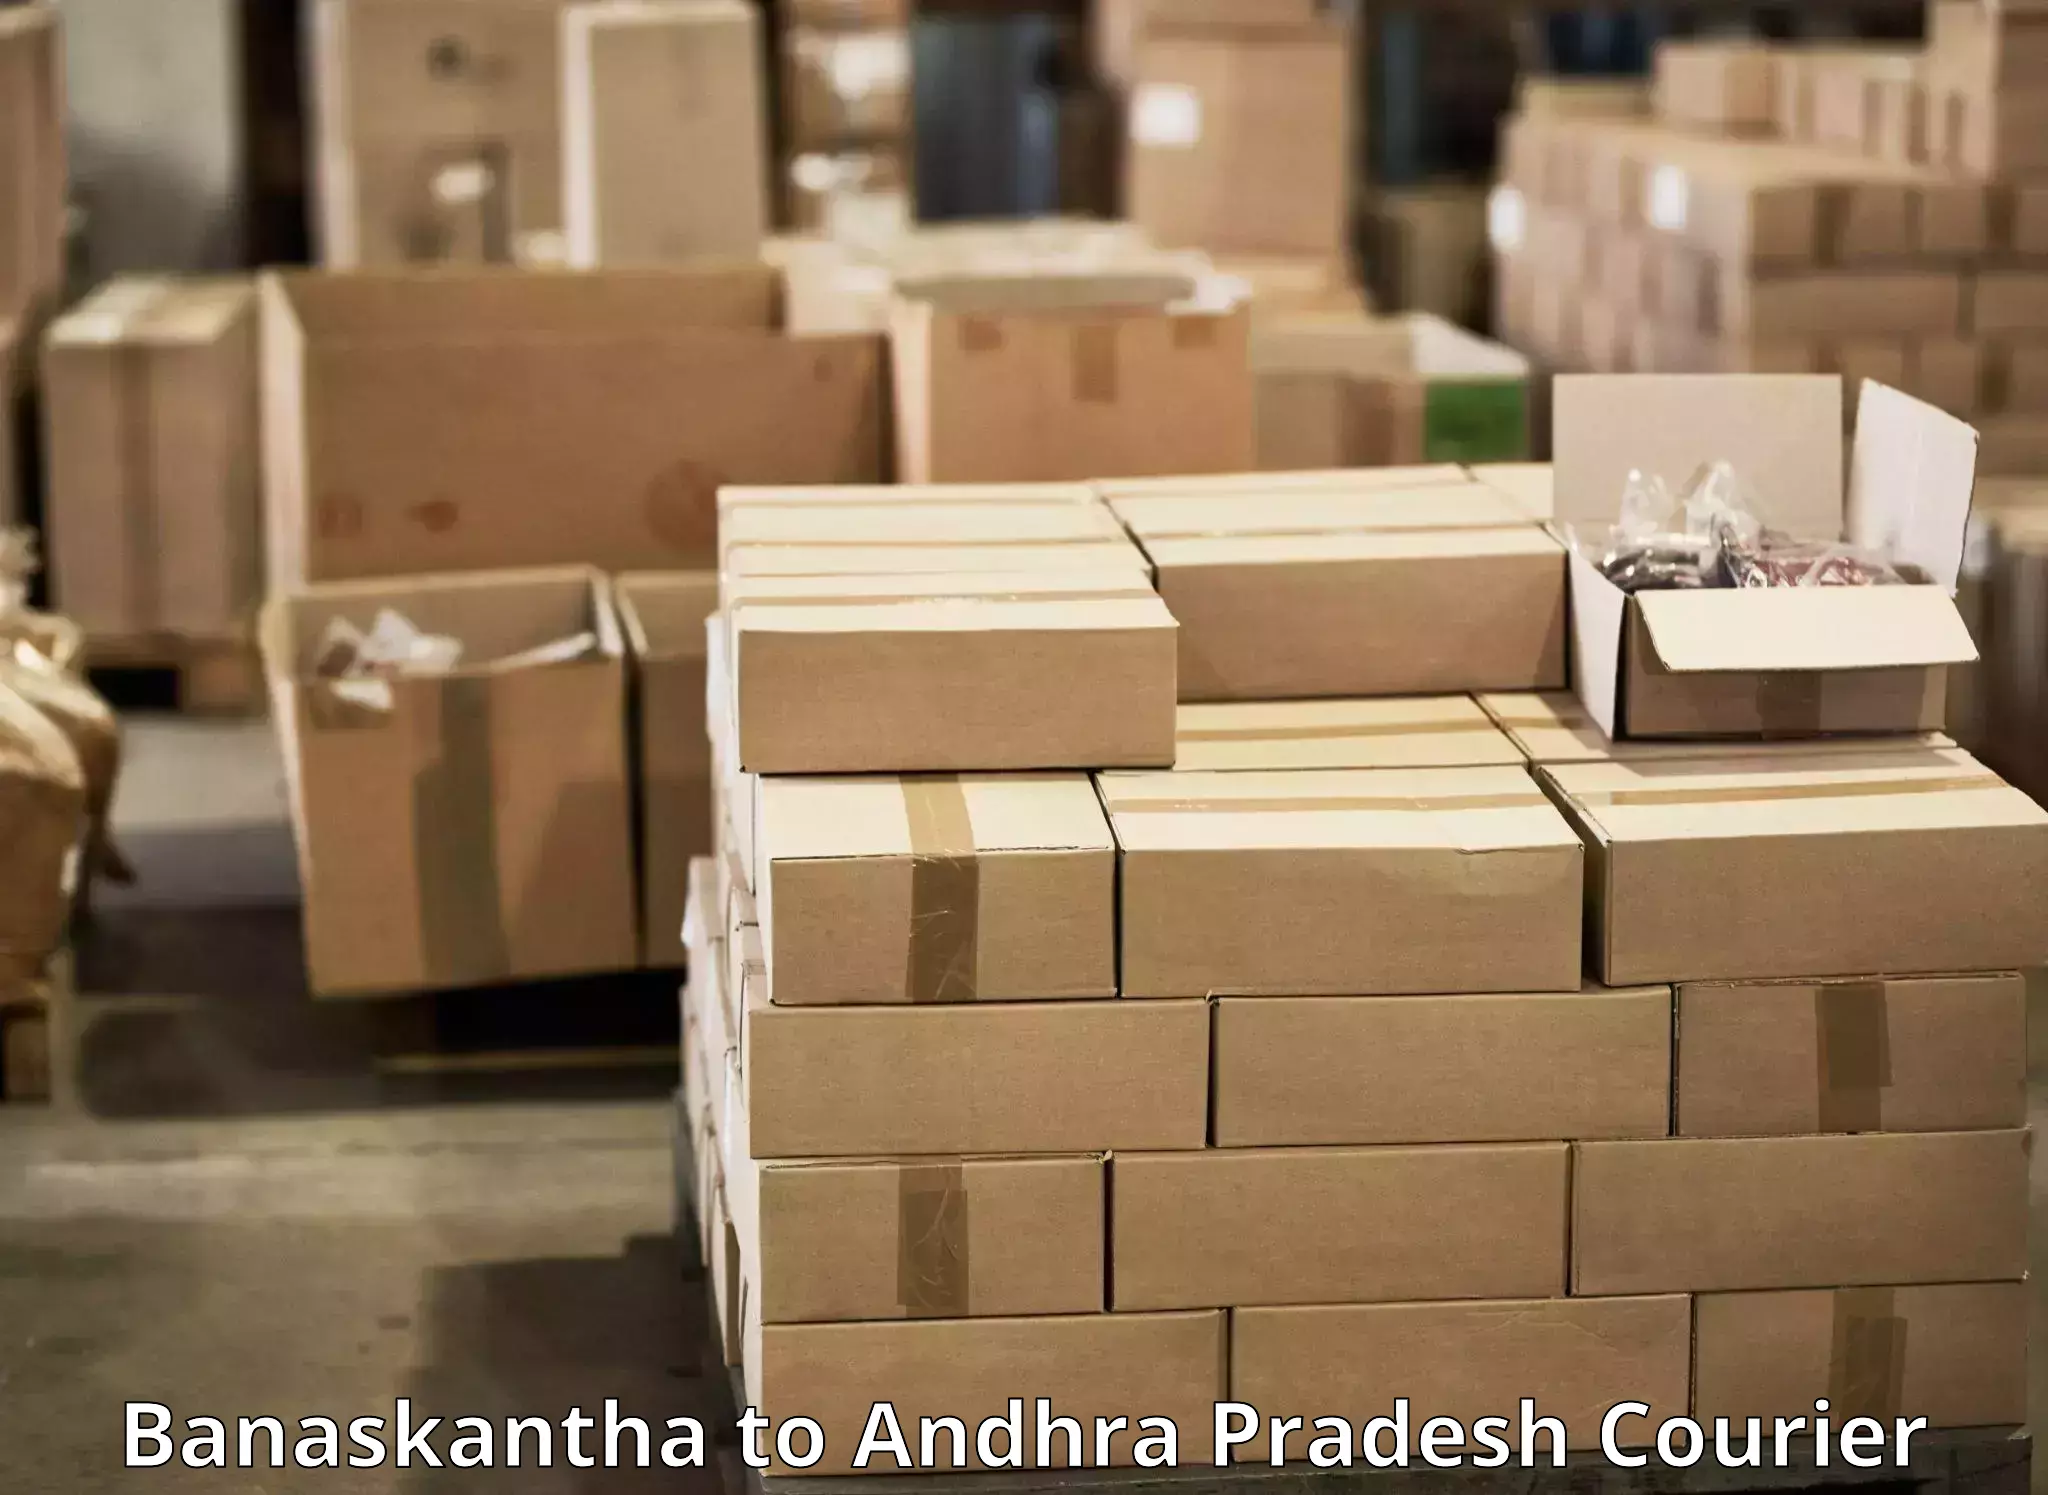 Next-day delivery options Banaskantha to Nandyal